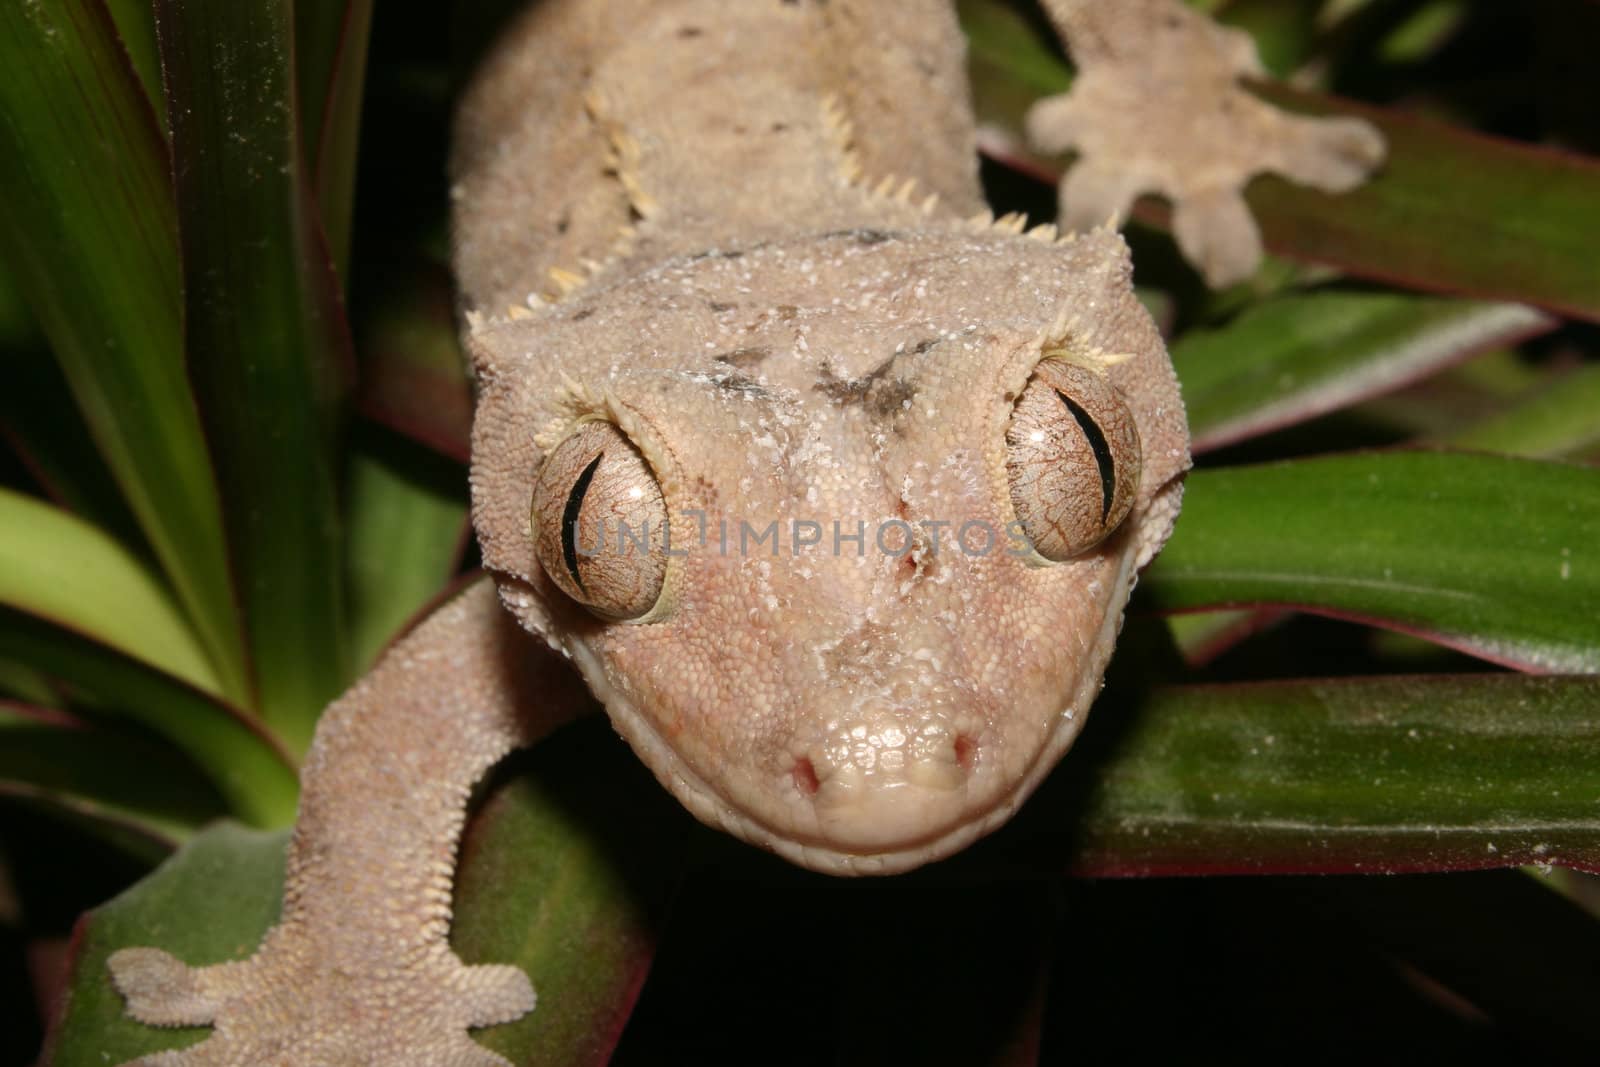 Crowns Gecko (Rhacodactylus ciliatus) on a plant - Portrait